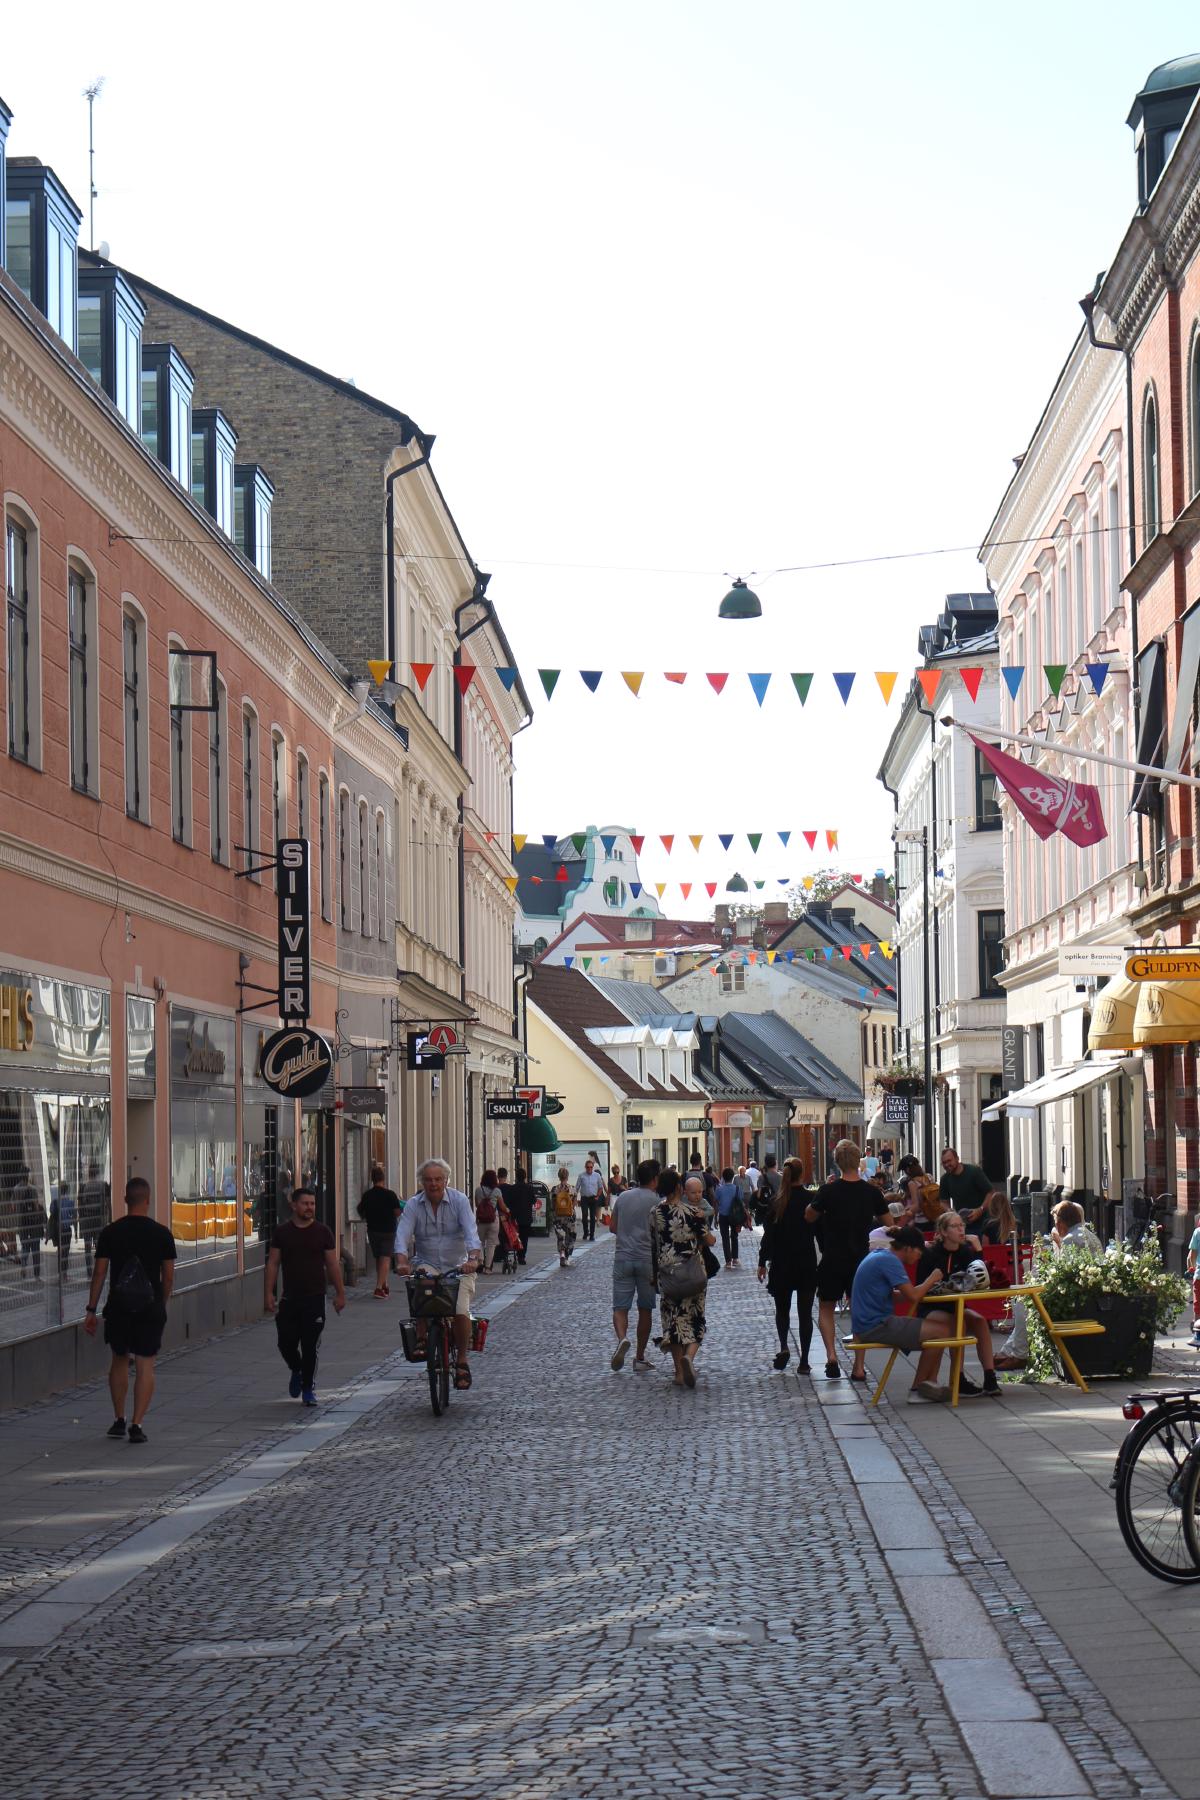 De nombreuses personnes sur la Rue Lilla Fiskaregatan à Lund, sans masque. Sur la droite, les terrasses des bars et restaurants sont bondés. La distanciation sociale n'est pas très respectée…